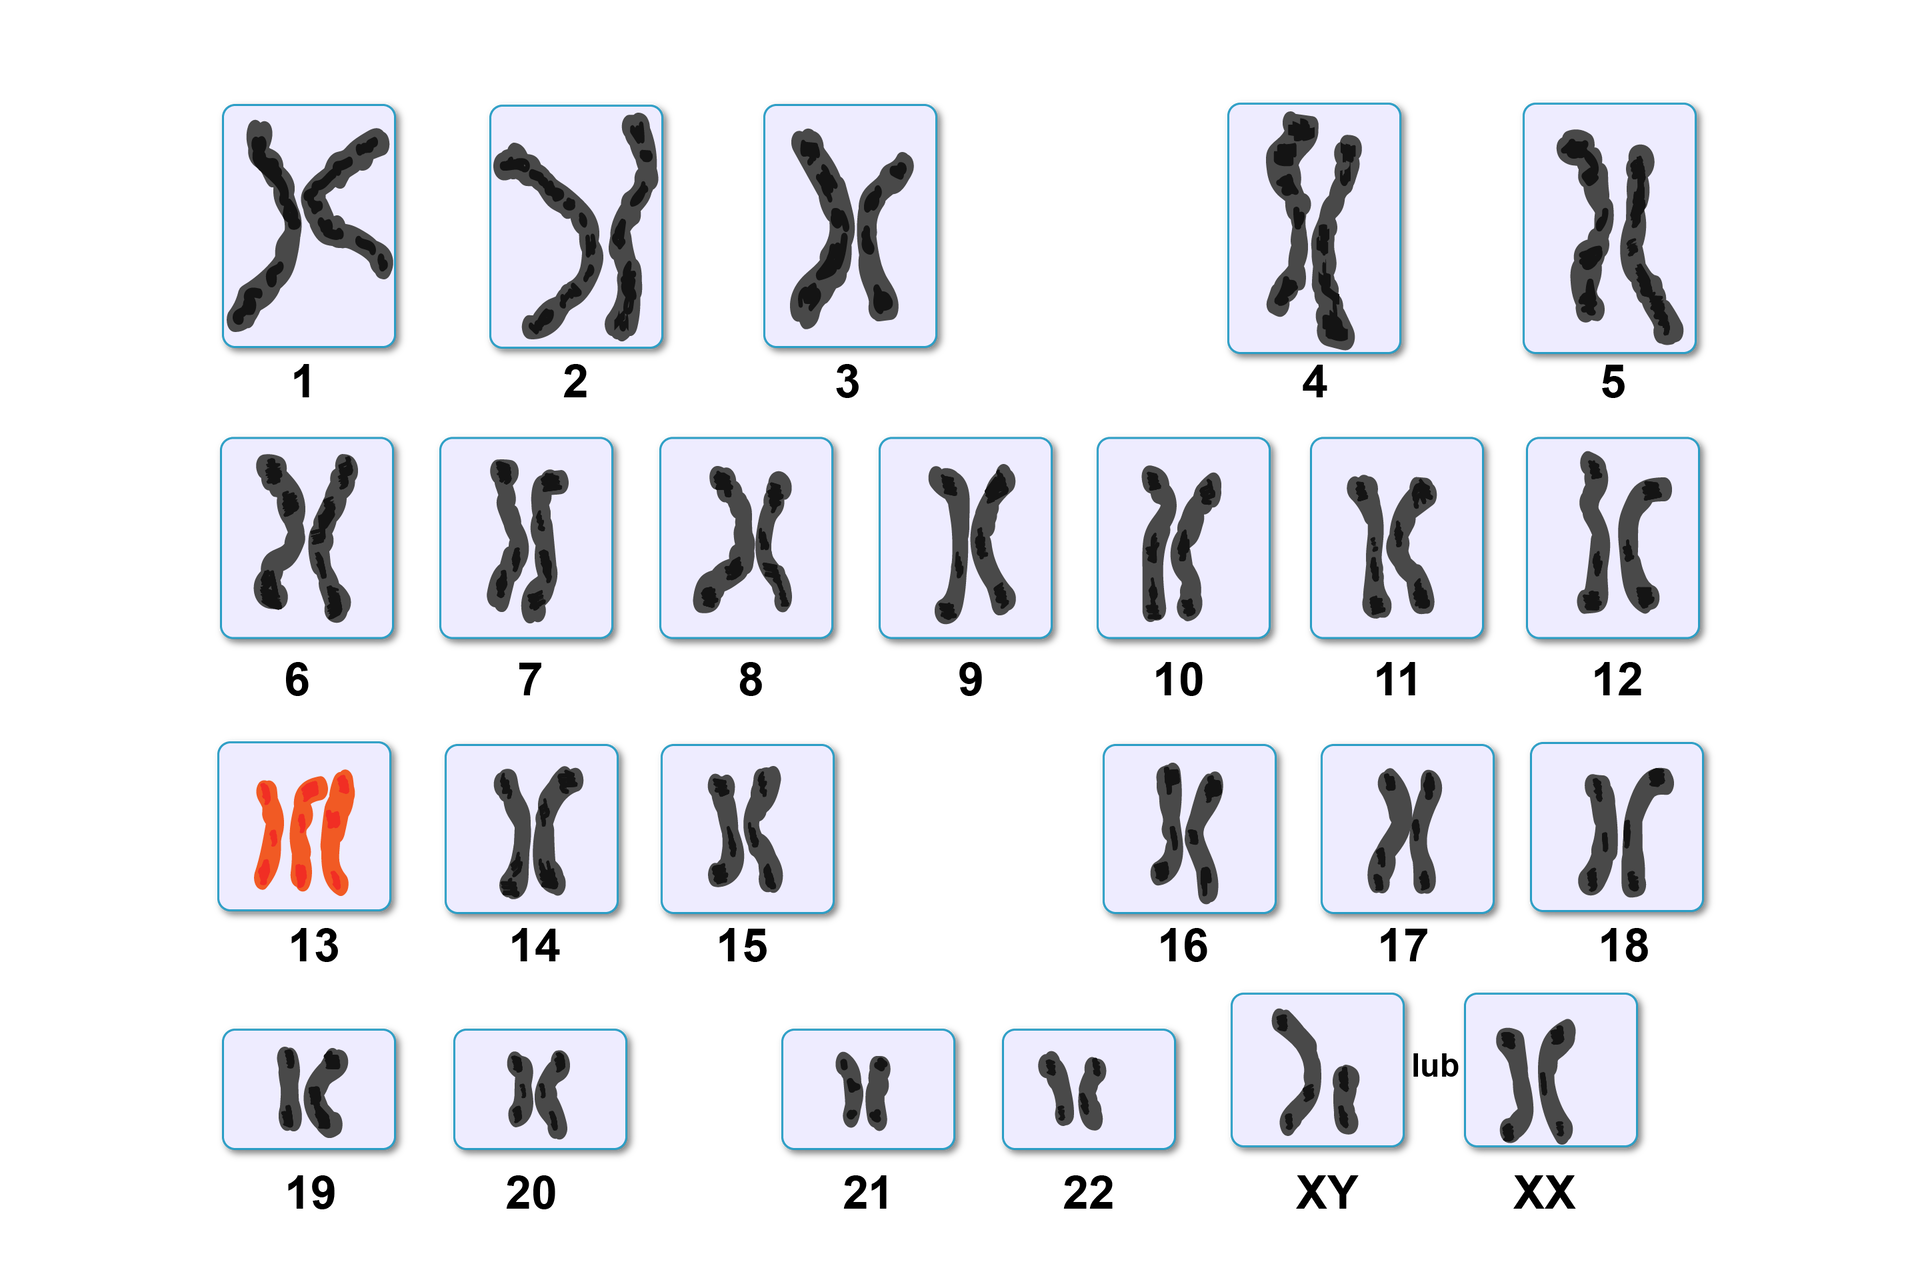 Ilustracja przedstawia kariotyp osoby z zespołem Pataua. Zawiera 22 pary chromosomów. Ostatnia para to chromosom XY lub XX. Pod numerem 13 są trzy chromosomy, zaznaczono je kolorem czerwonym.   